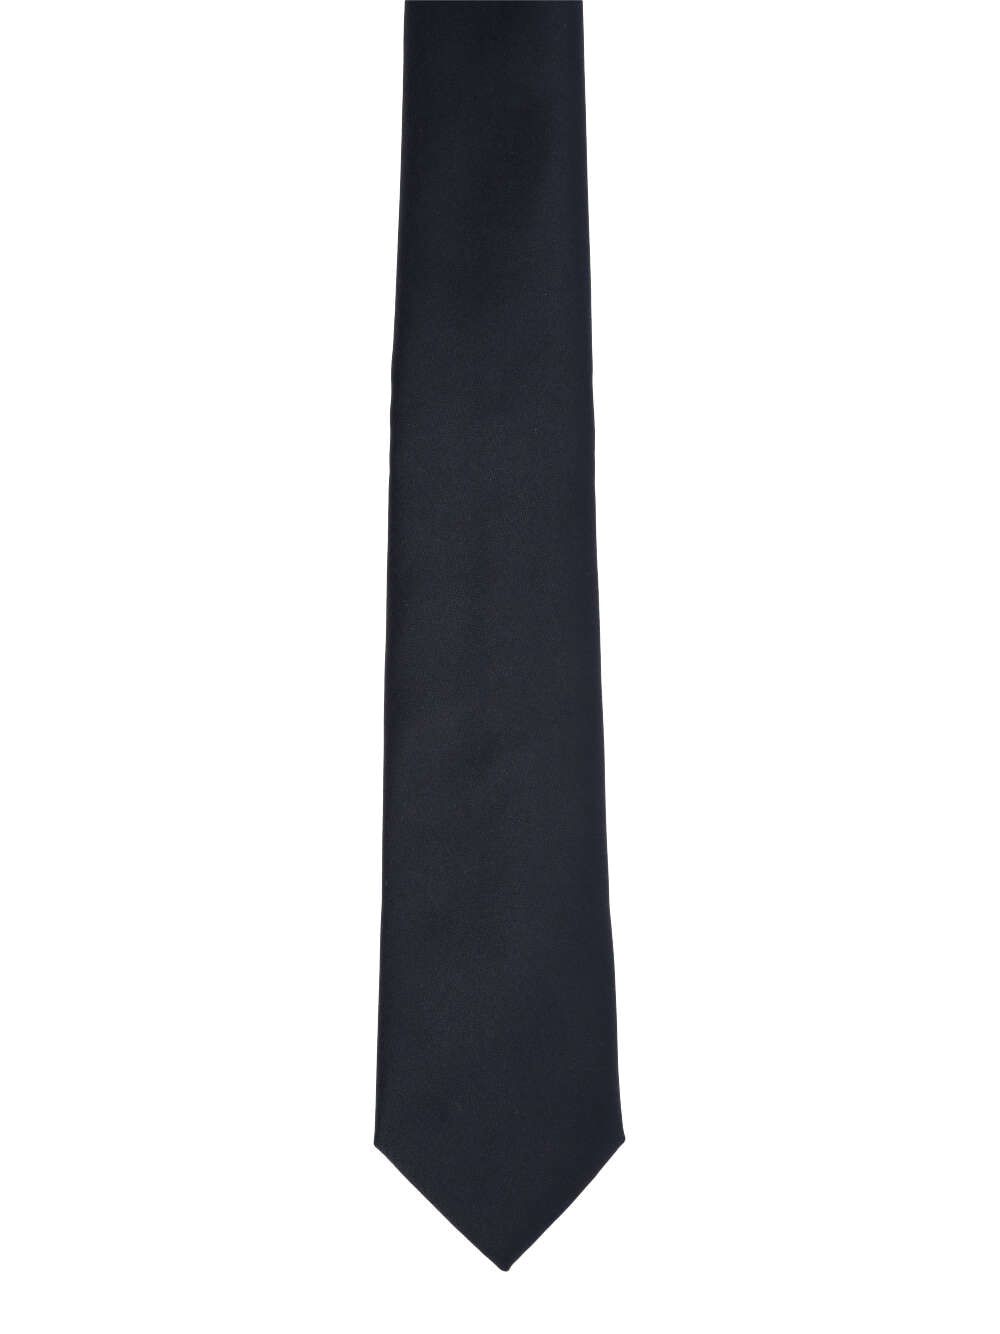 Cravatta Classica